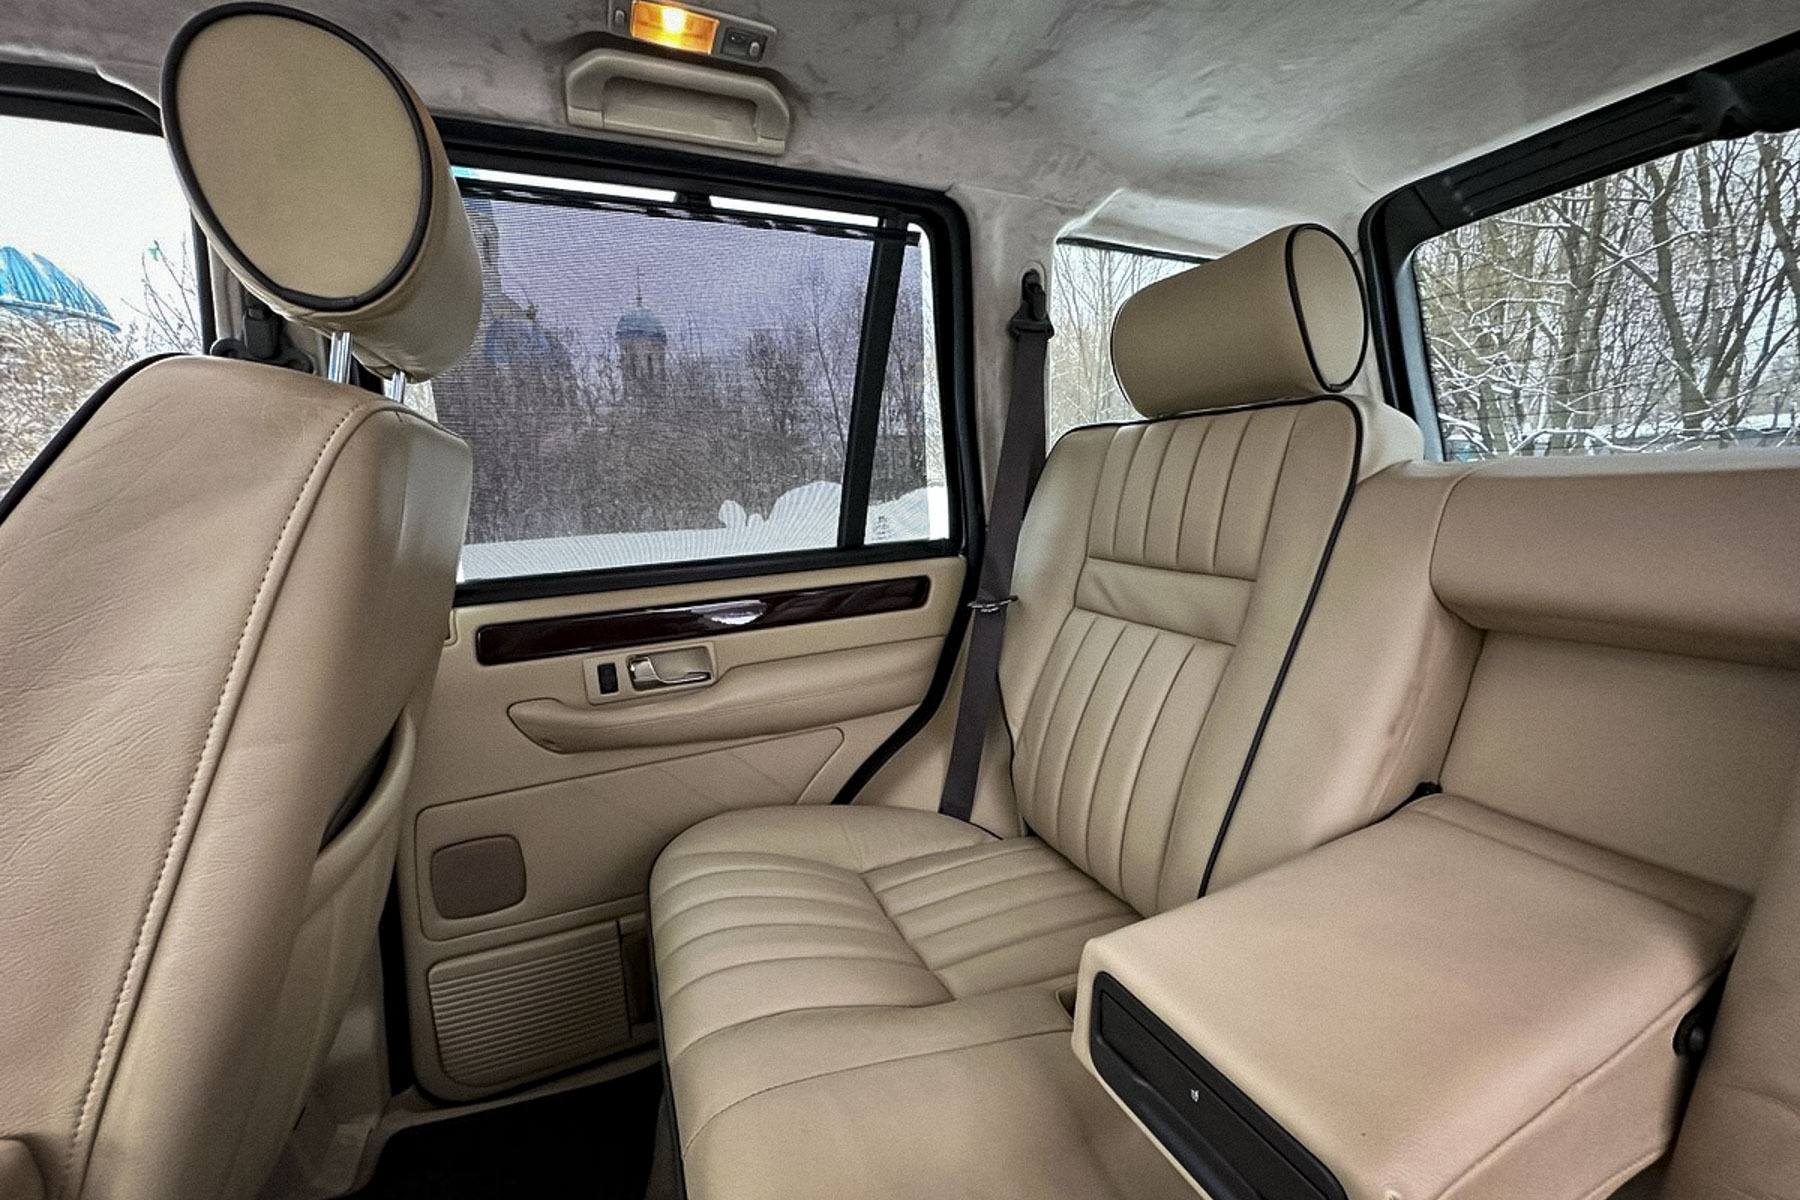 Почти новый 23-летний Range Rover продают в Москве за два миллиона рублей11